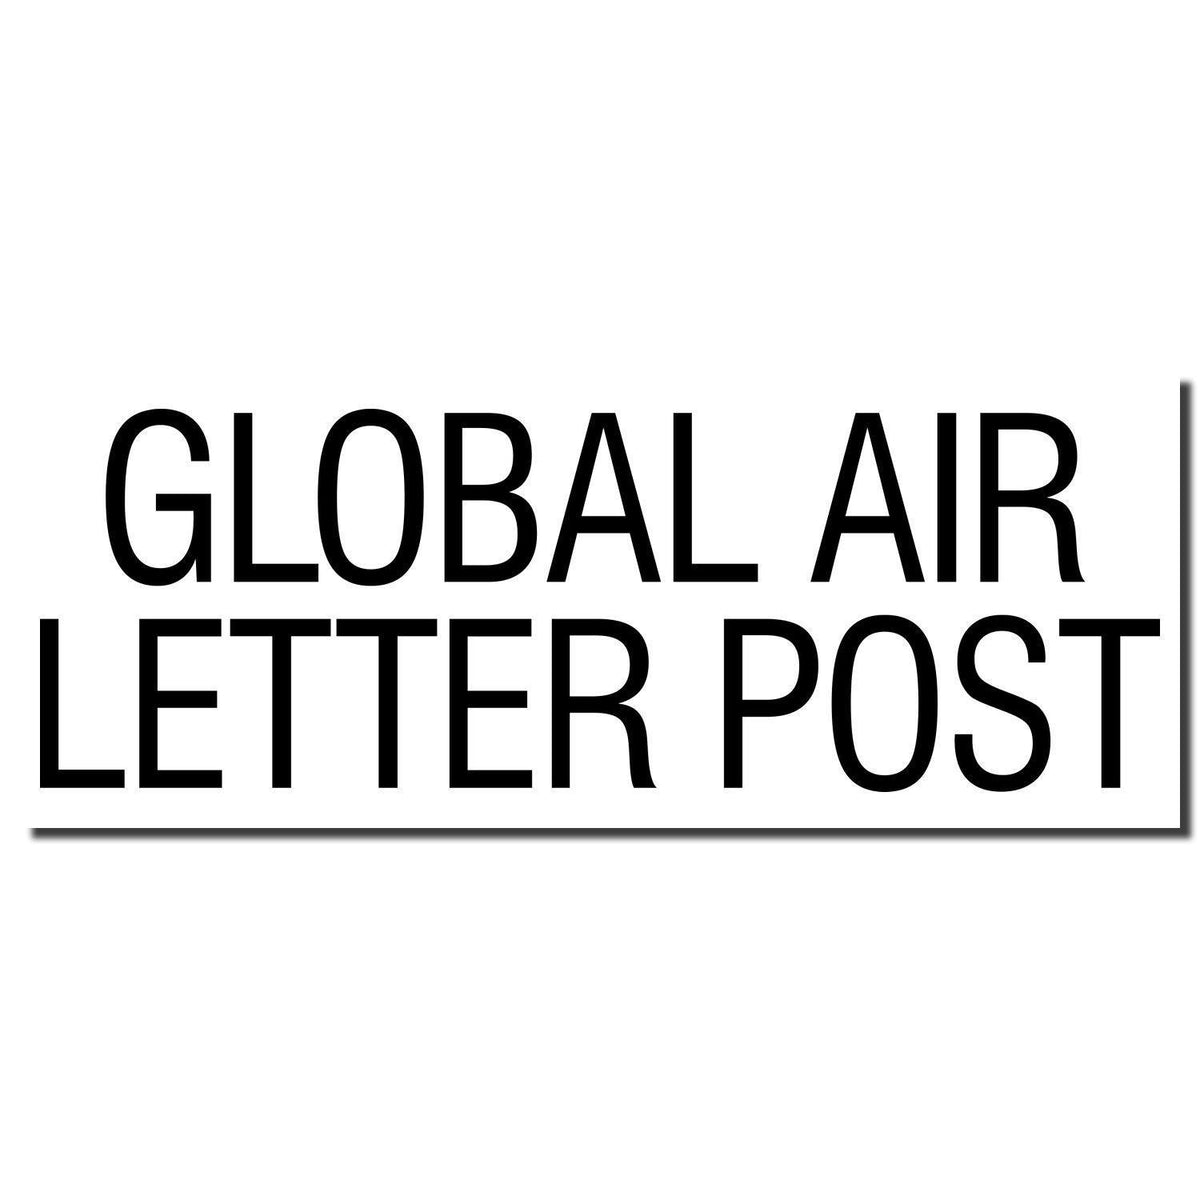 Enlarged Imprint Large Global Air Letter Post Rubber Stamp Sample